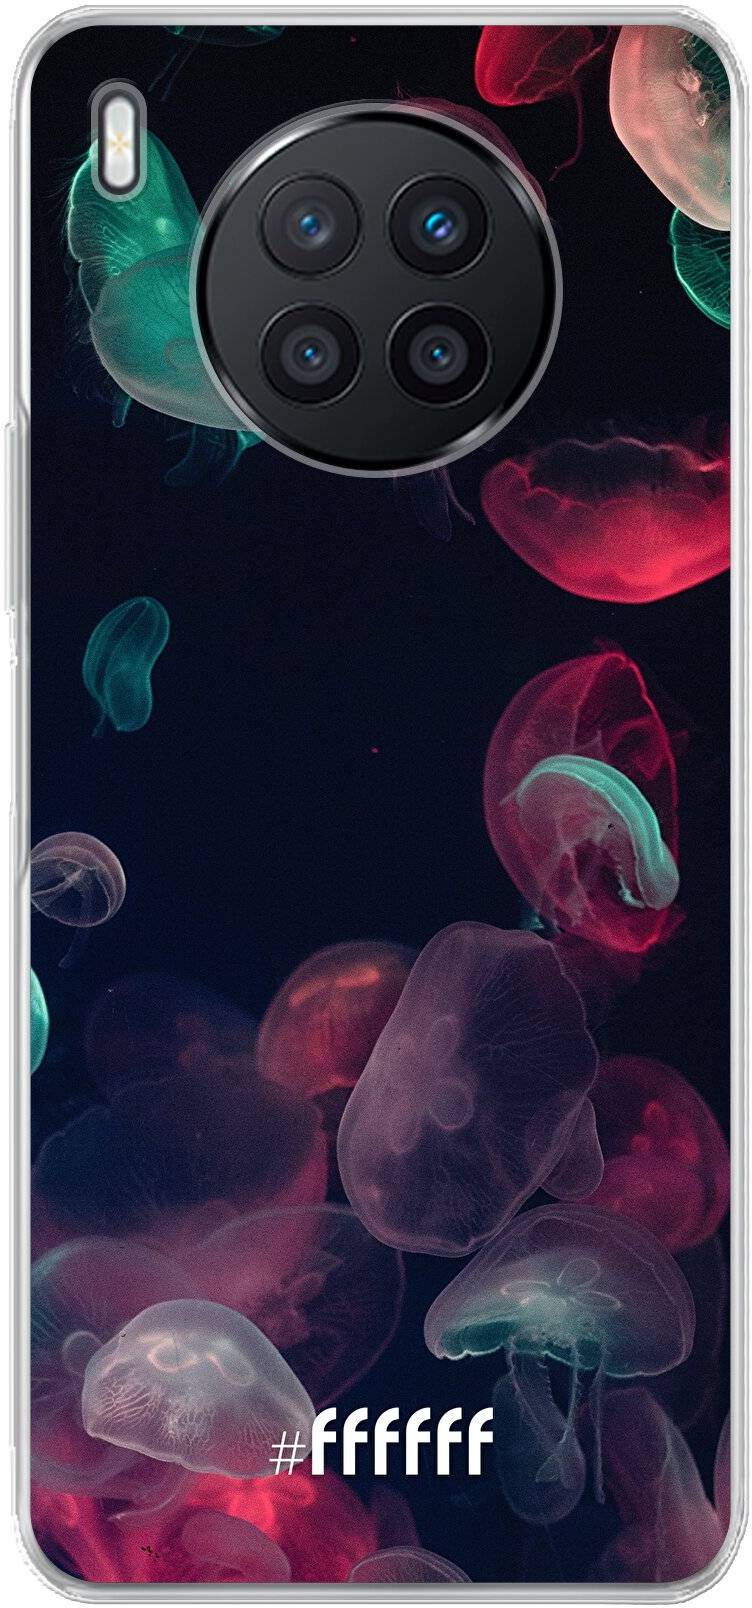 Jellyfish Bloom Nova 8i